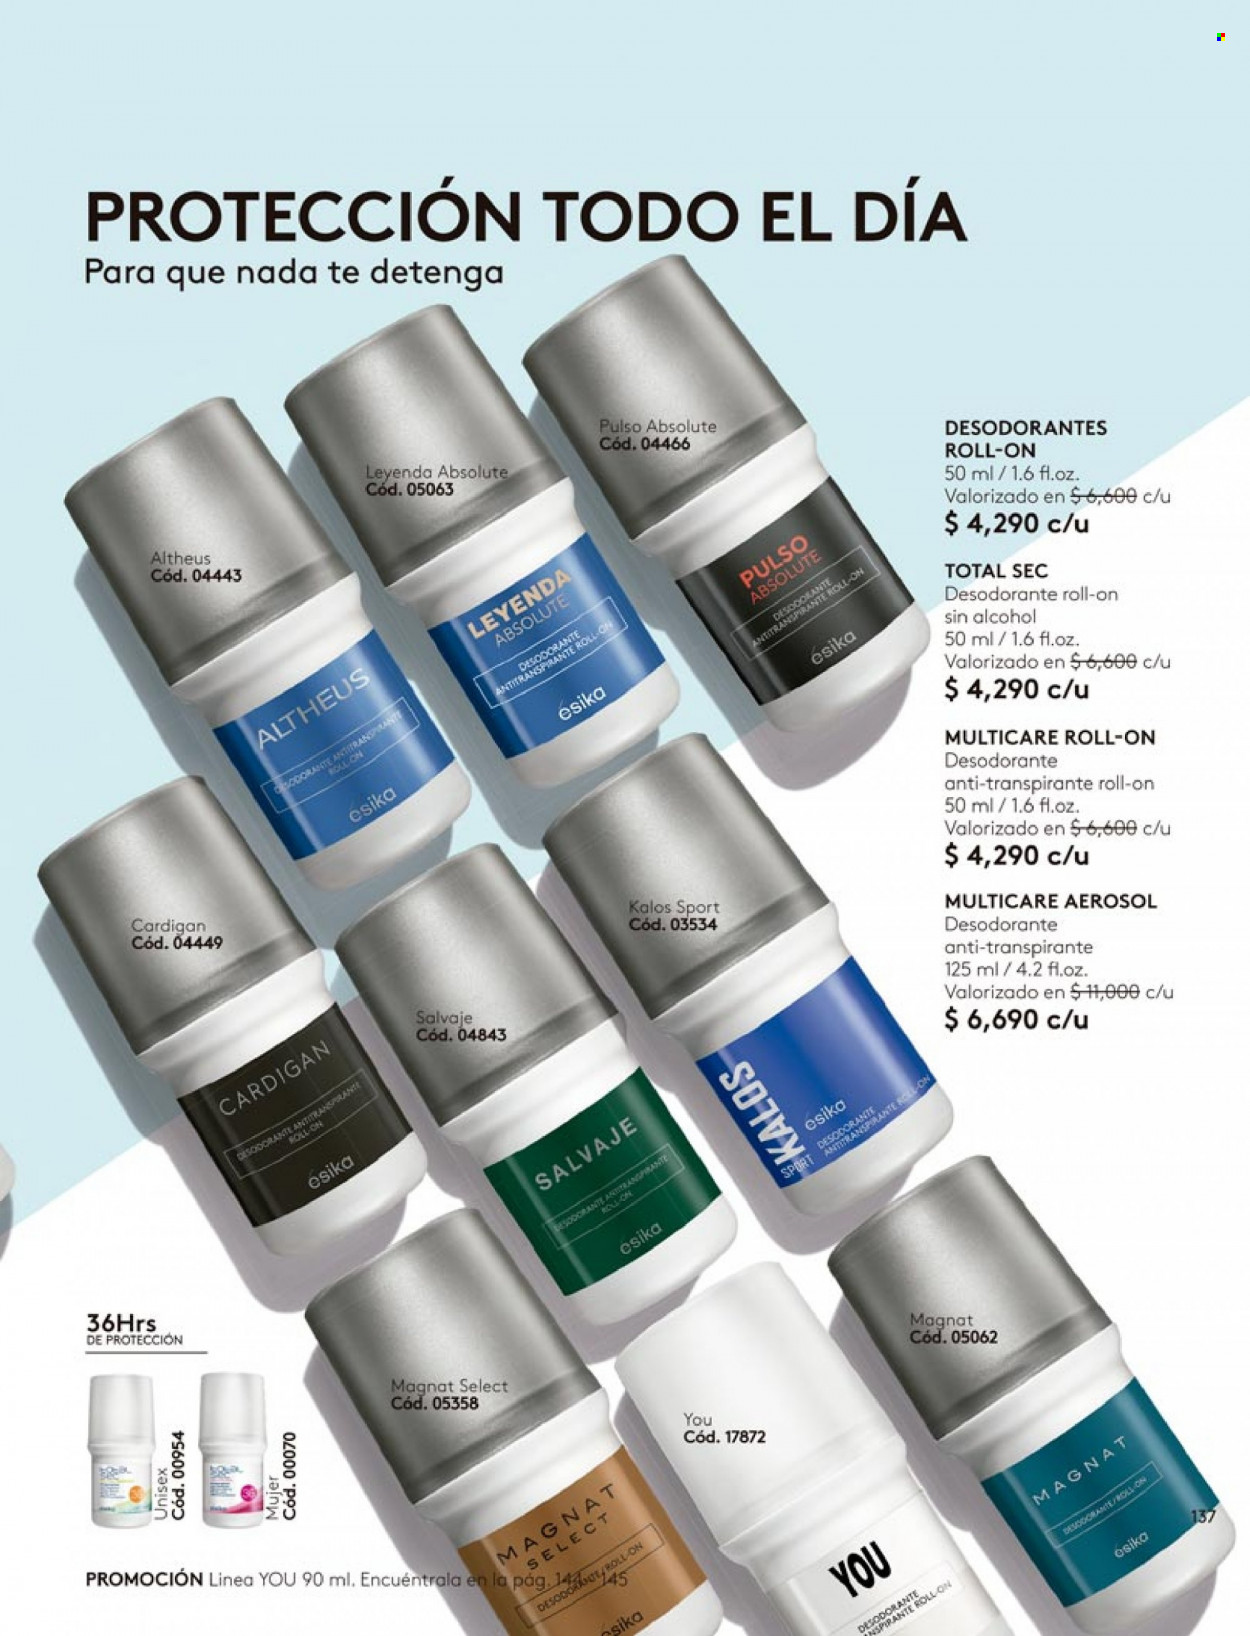 Catálogo Ésika - Ventas - desodorante de bola, desodorante, aerosol, antitranspirante. Página 137.